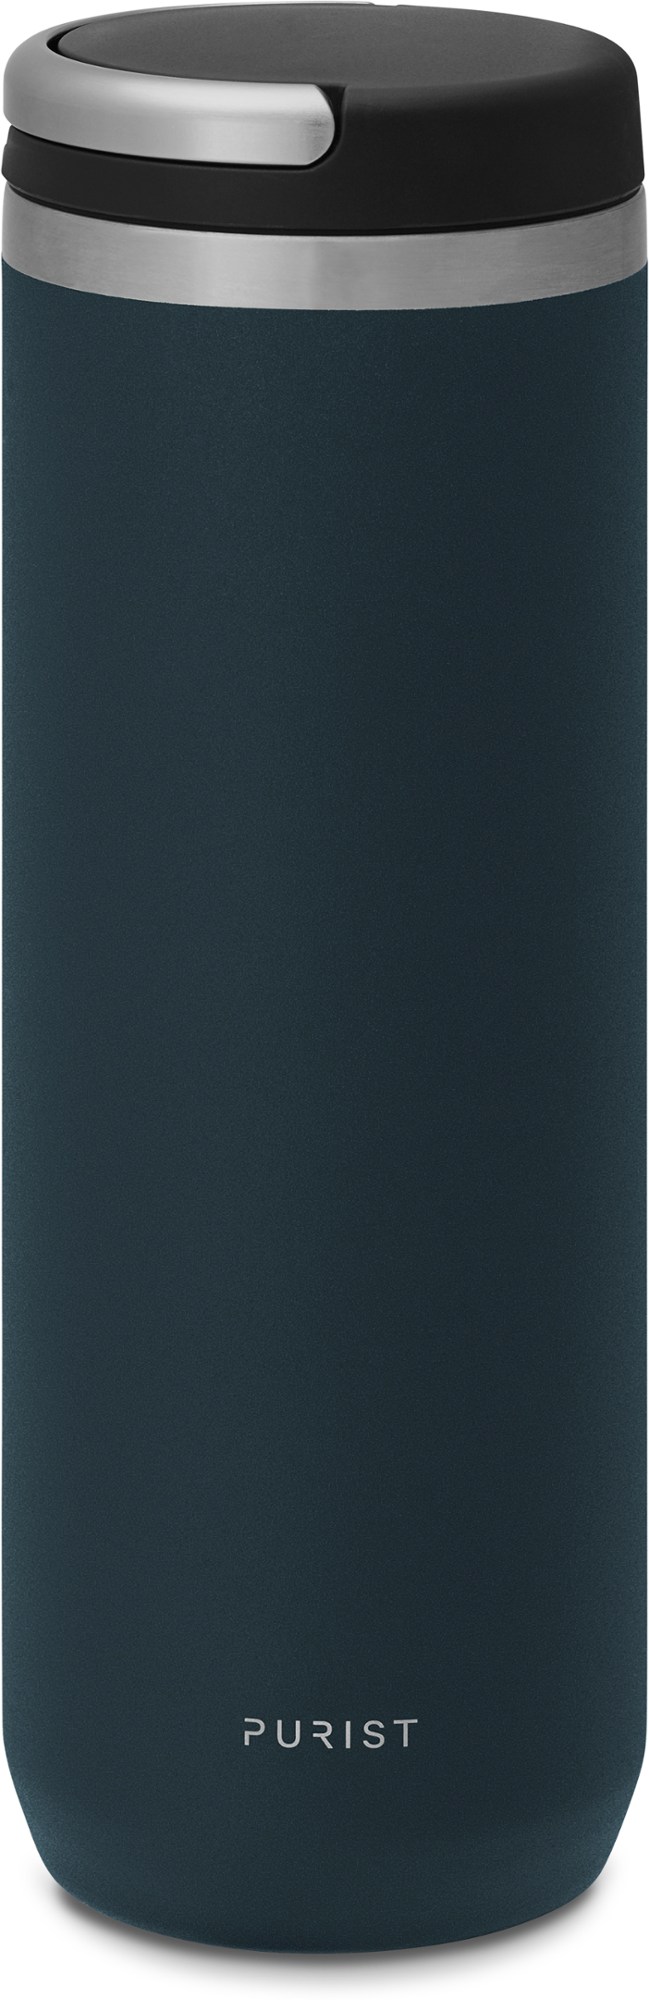 Вакуумная бутылка для воды Mover с крышкой Element - 18 эт. унция Purist, синий 500 мл умный автомобильный термос чашка чай кофе вакуумная фляжка дисплей температуры умная бутылка для воды для seat fr leon mk2 mk3 5f 6